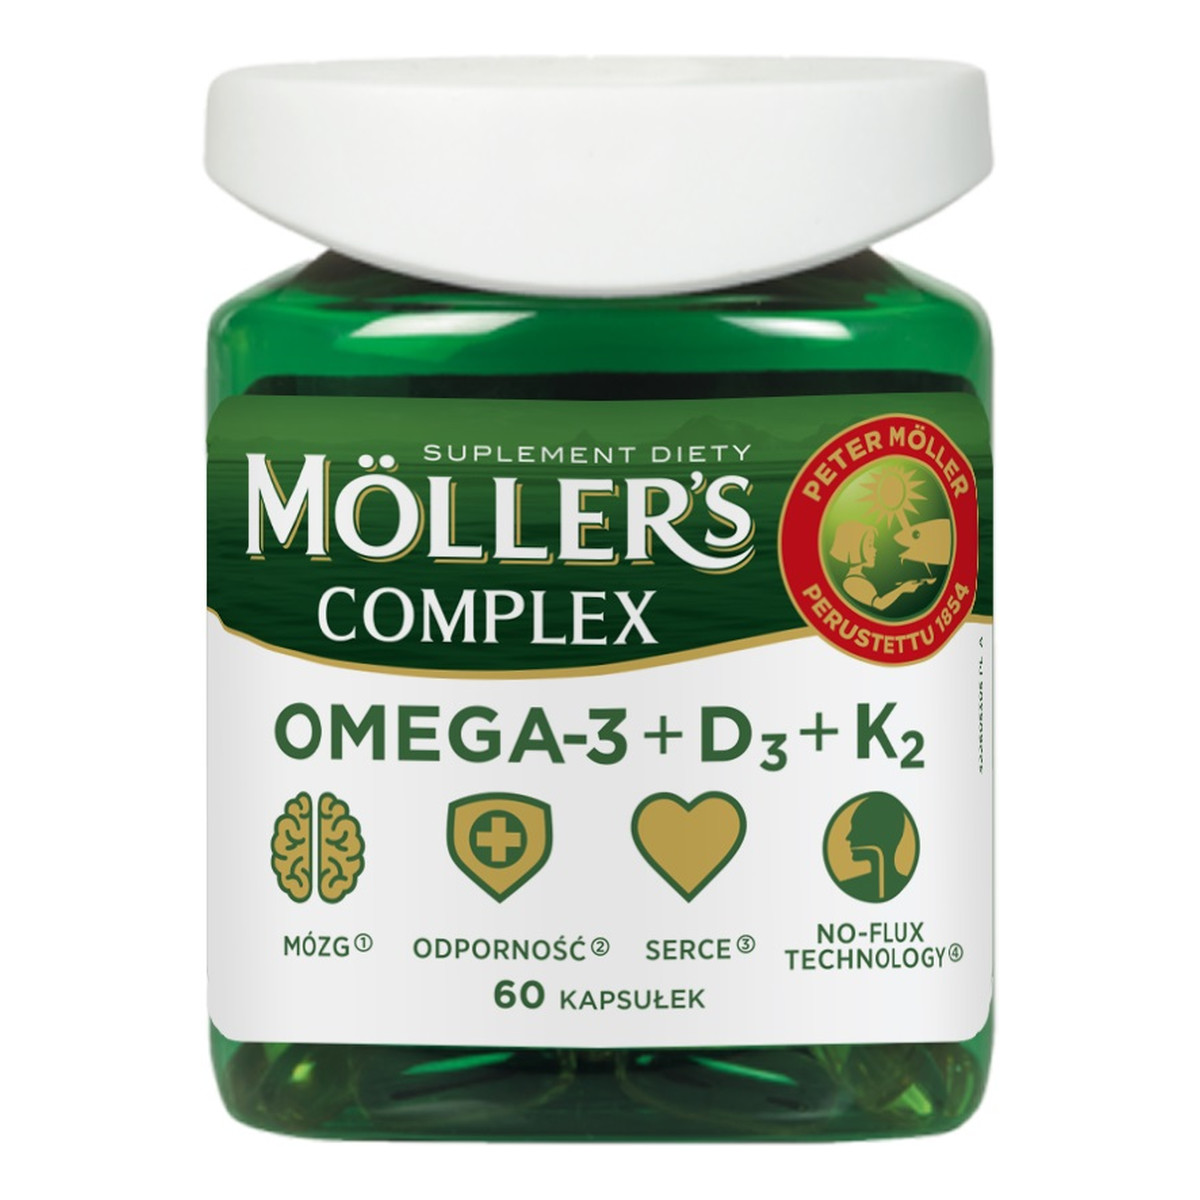 Moller's Complex omega-3 + d3 + k2 suplement diety 60 kapsułek